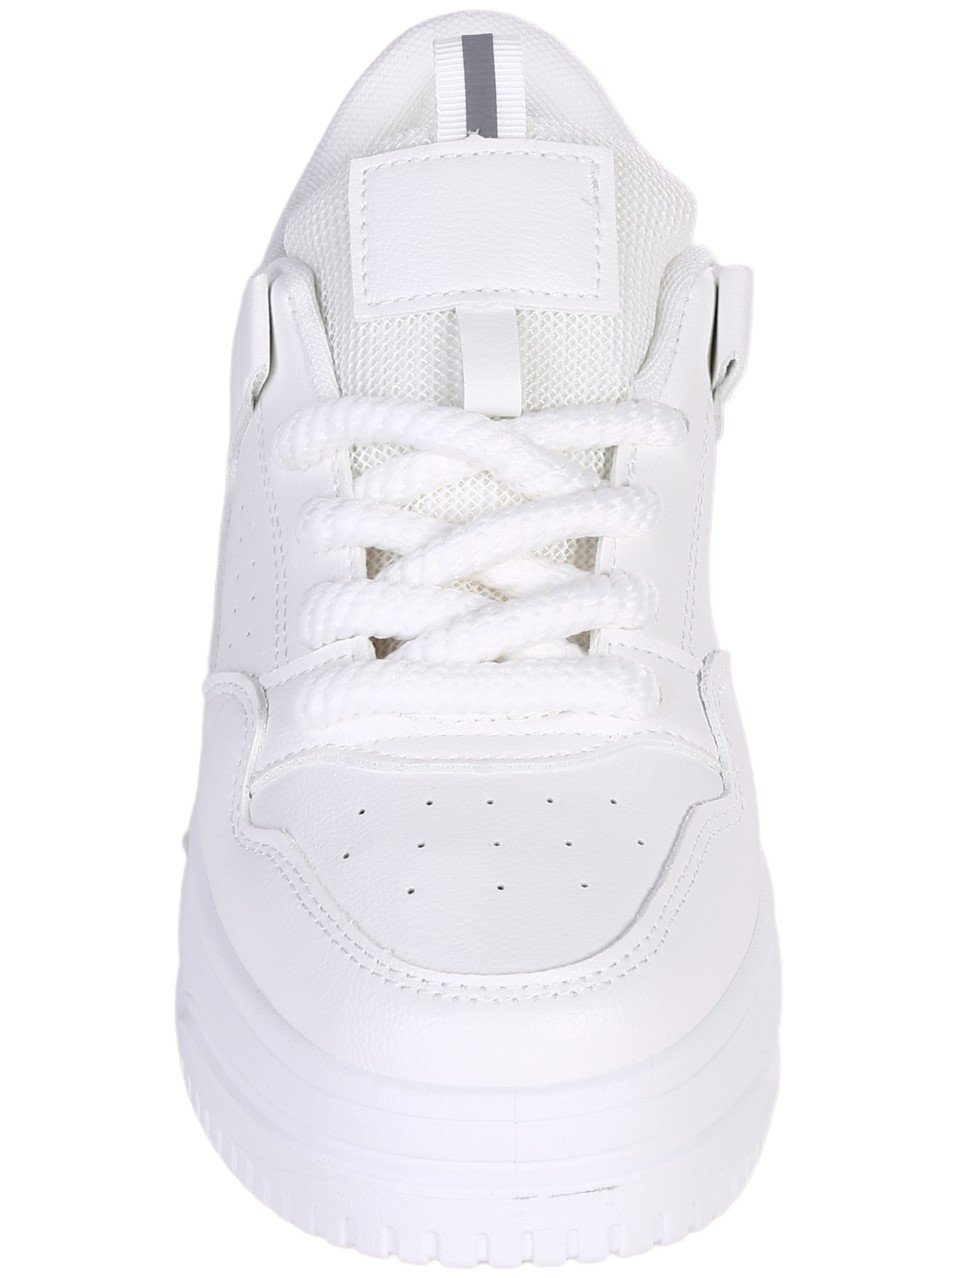 Eжедневни дамски обувки в бяло 3U-24006 all white